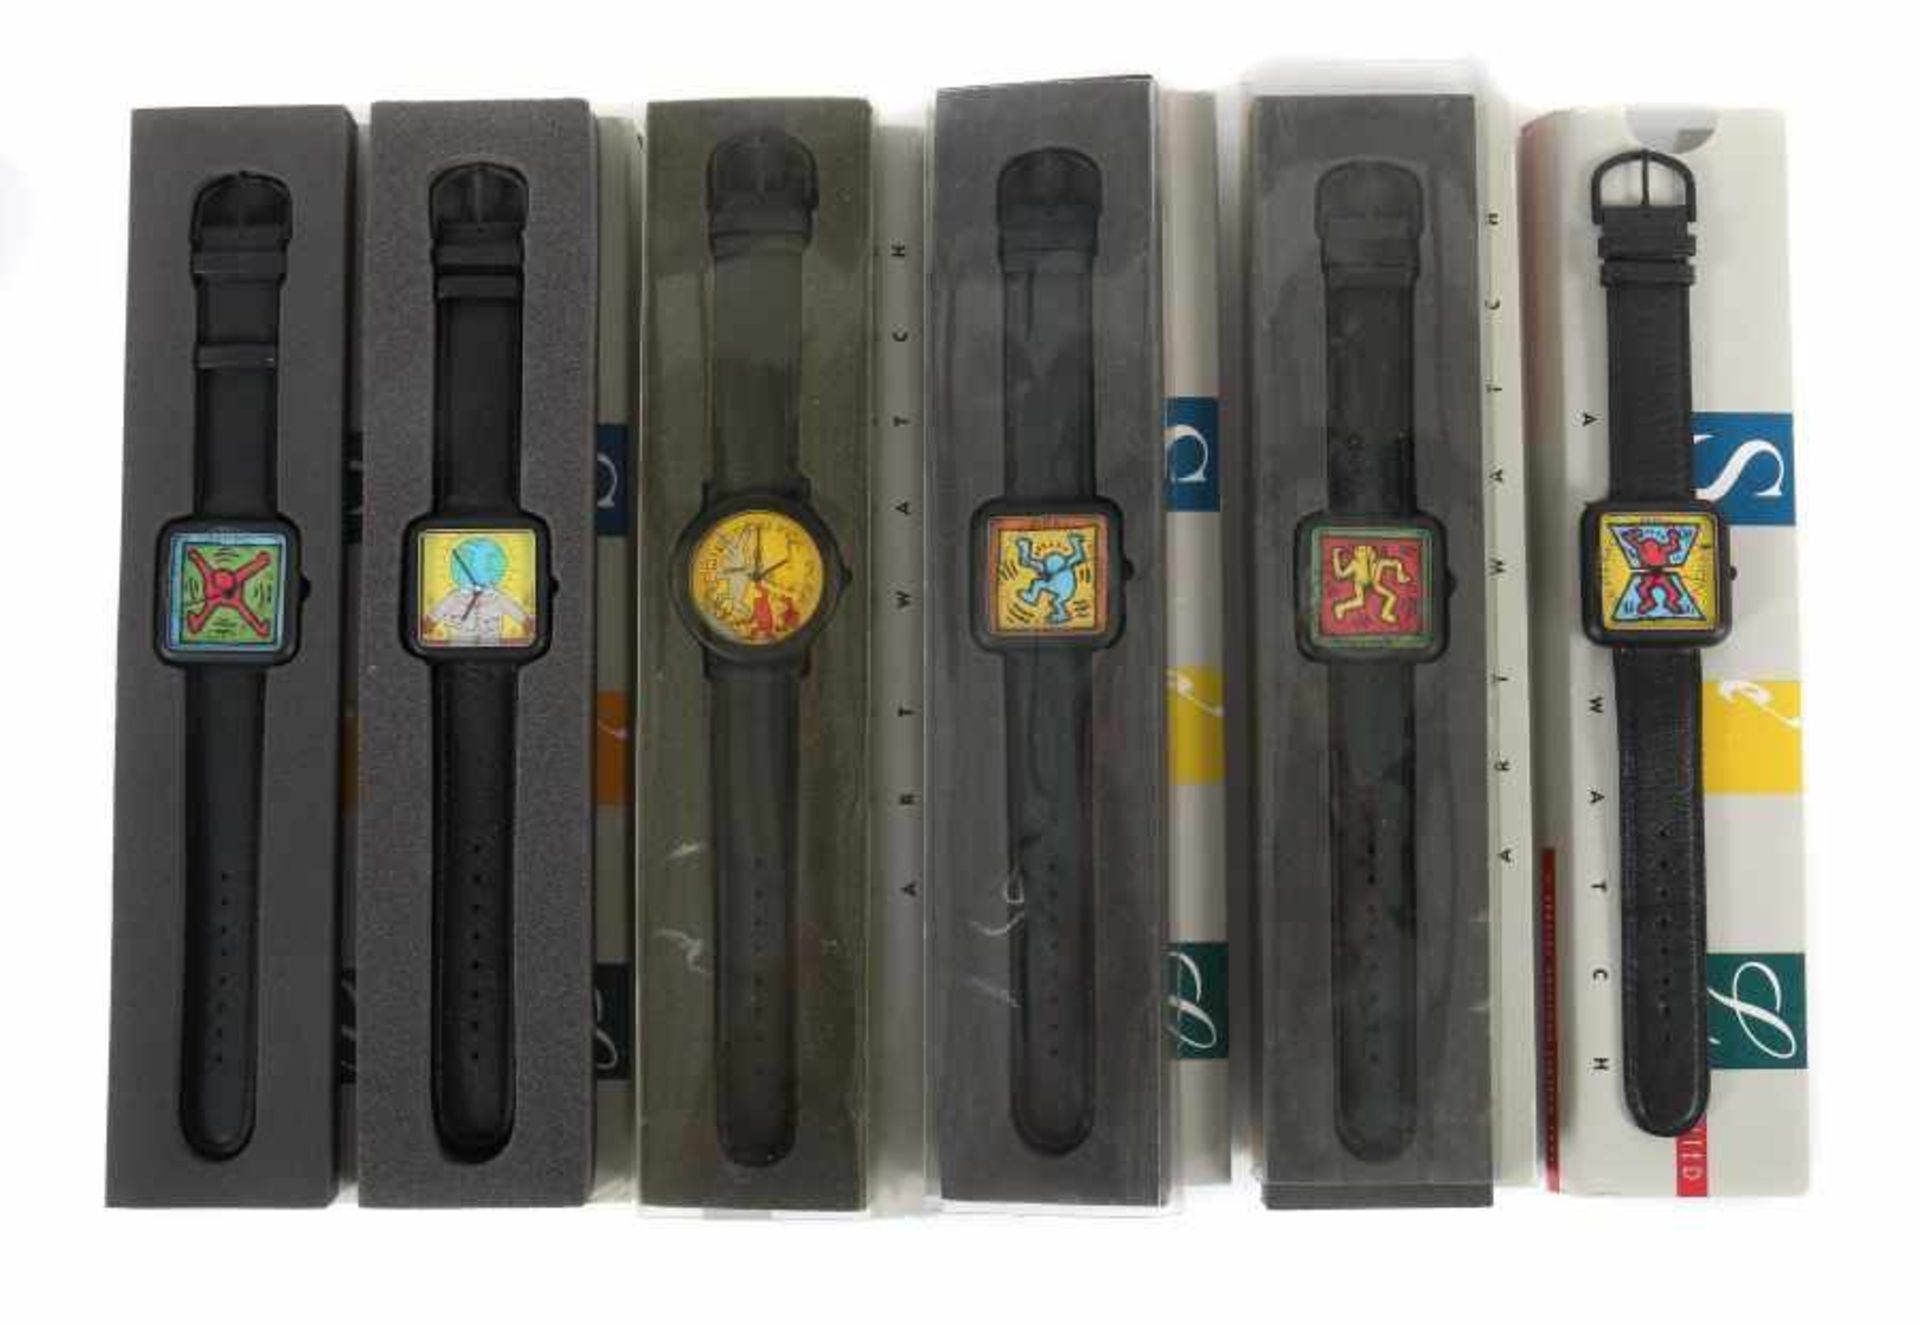 Haring, Keith 1958 - 1990, US-amerikanischer Künstler. 6 Armbanduhren, Ausführung: Special